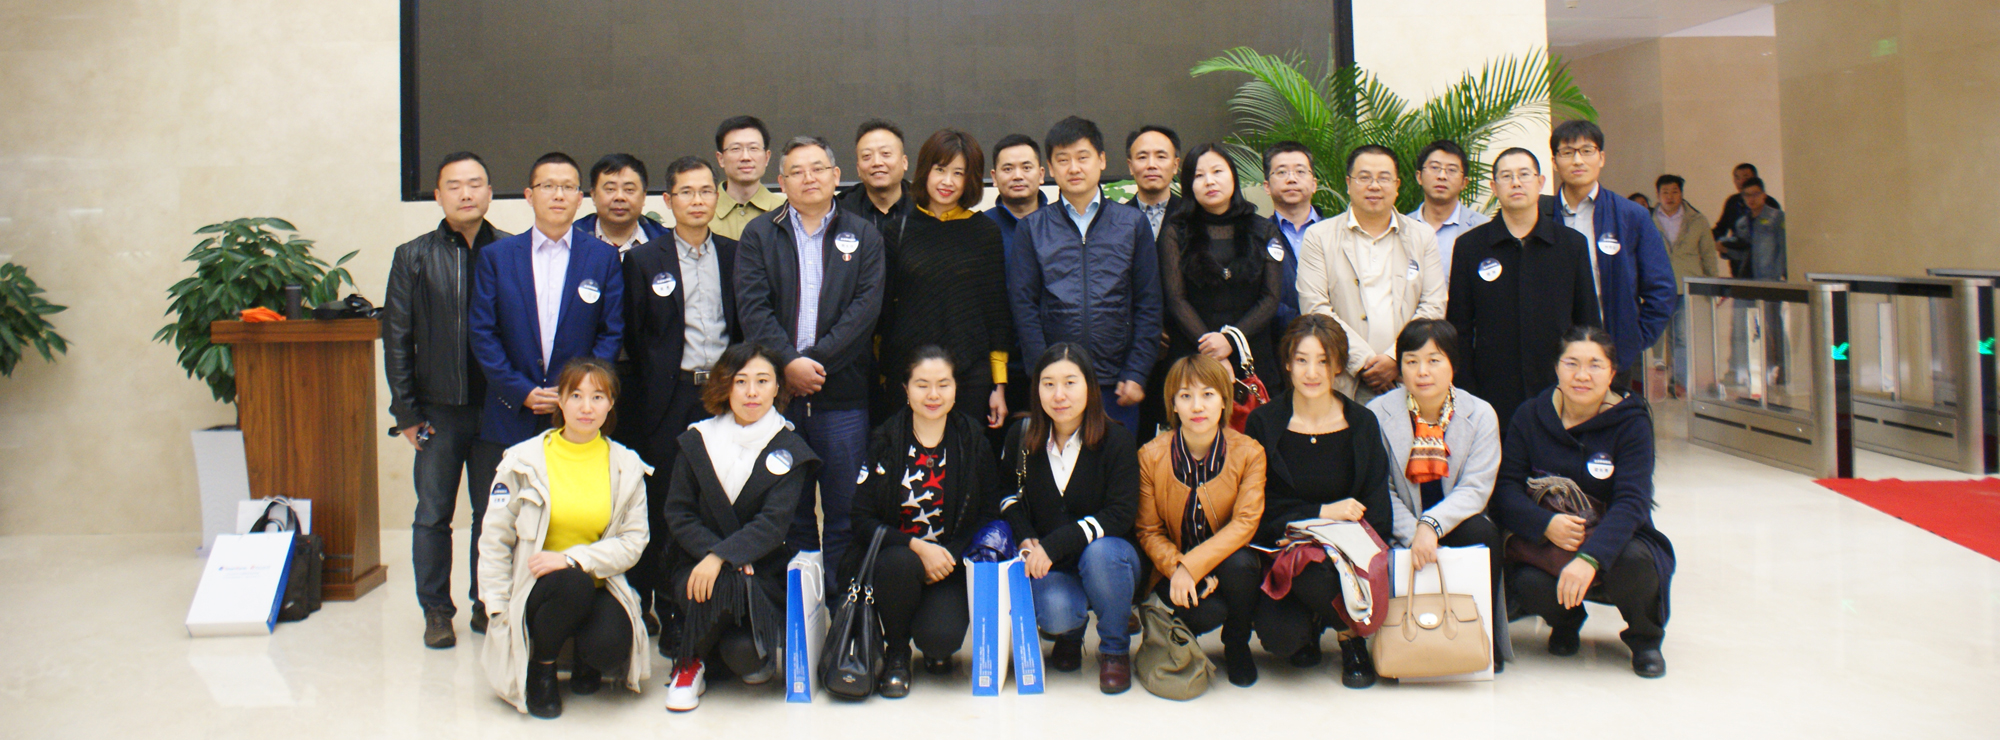 走进中国三维地理信息行业的领军企业-泰瑞数创 | GIO俱乐部会员互访